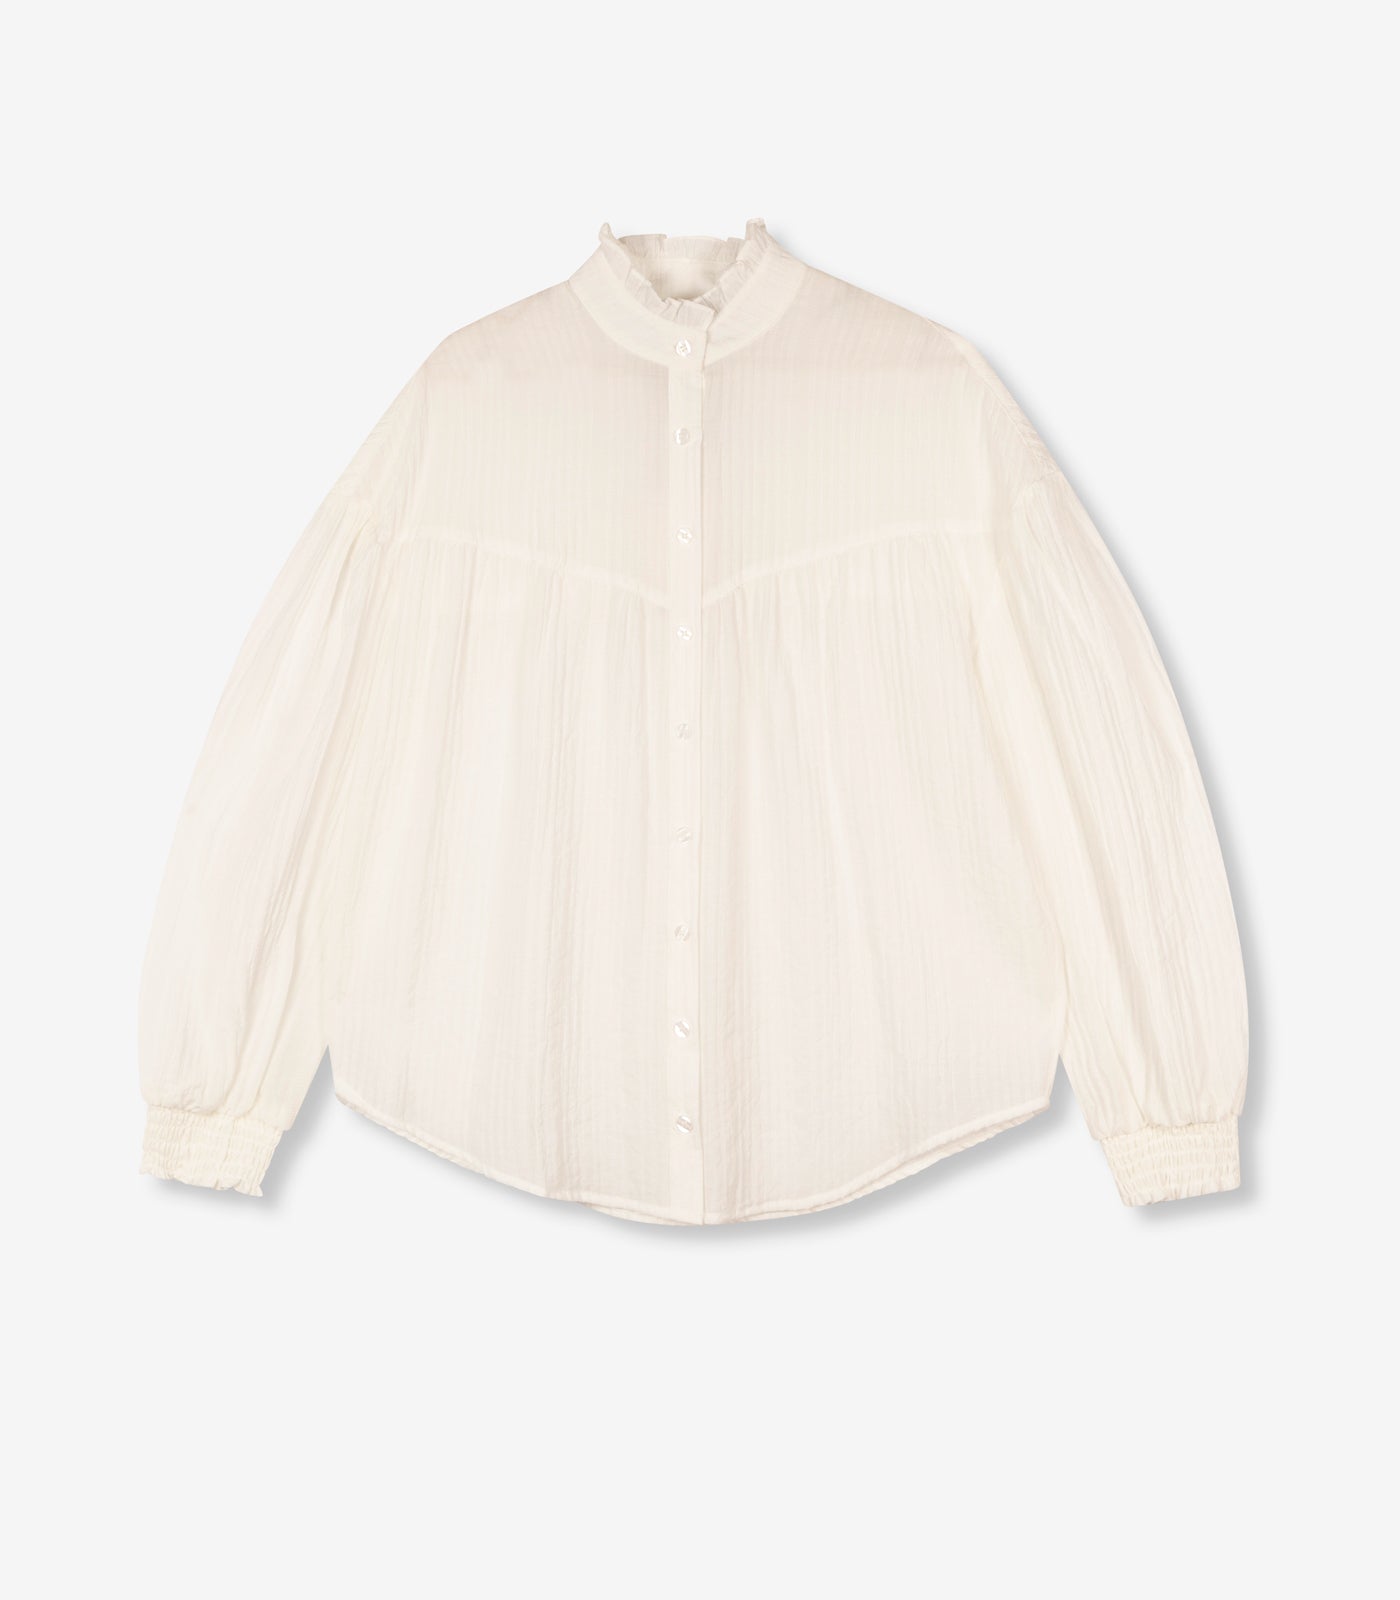 Oversized blouse - soft white